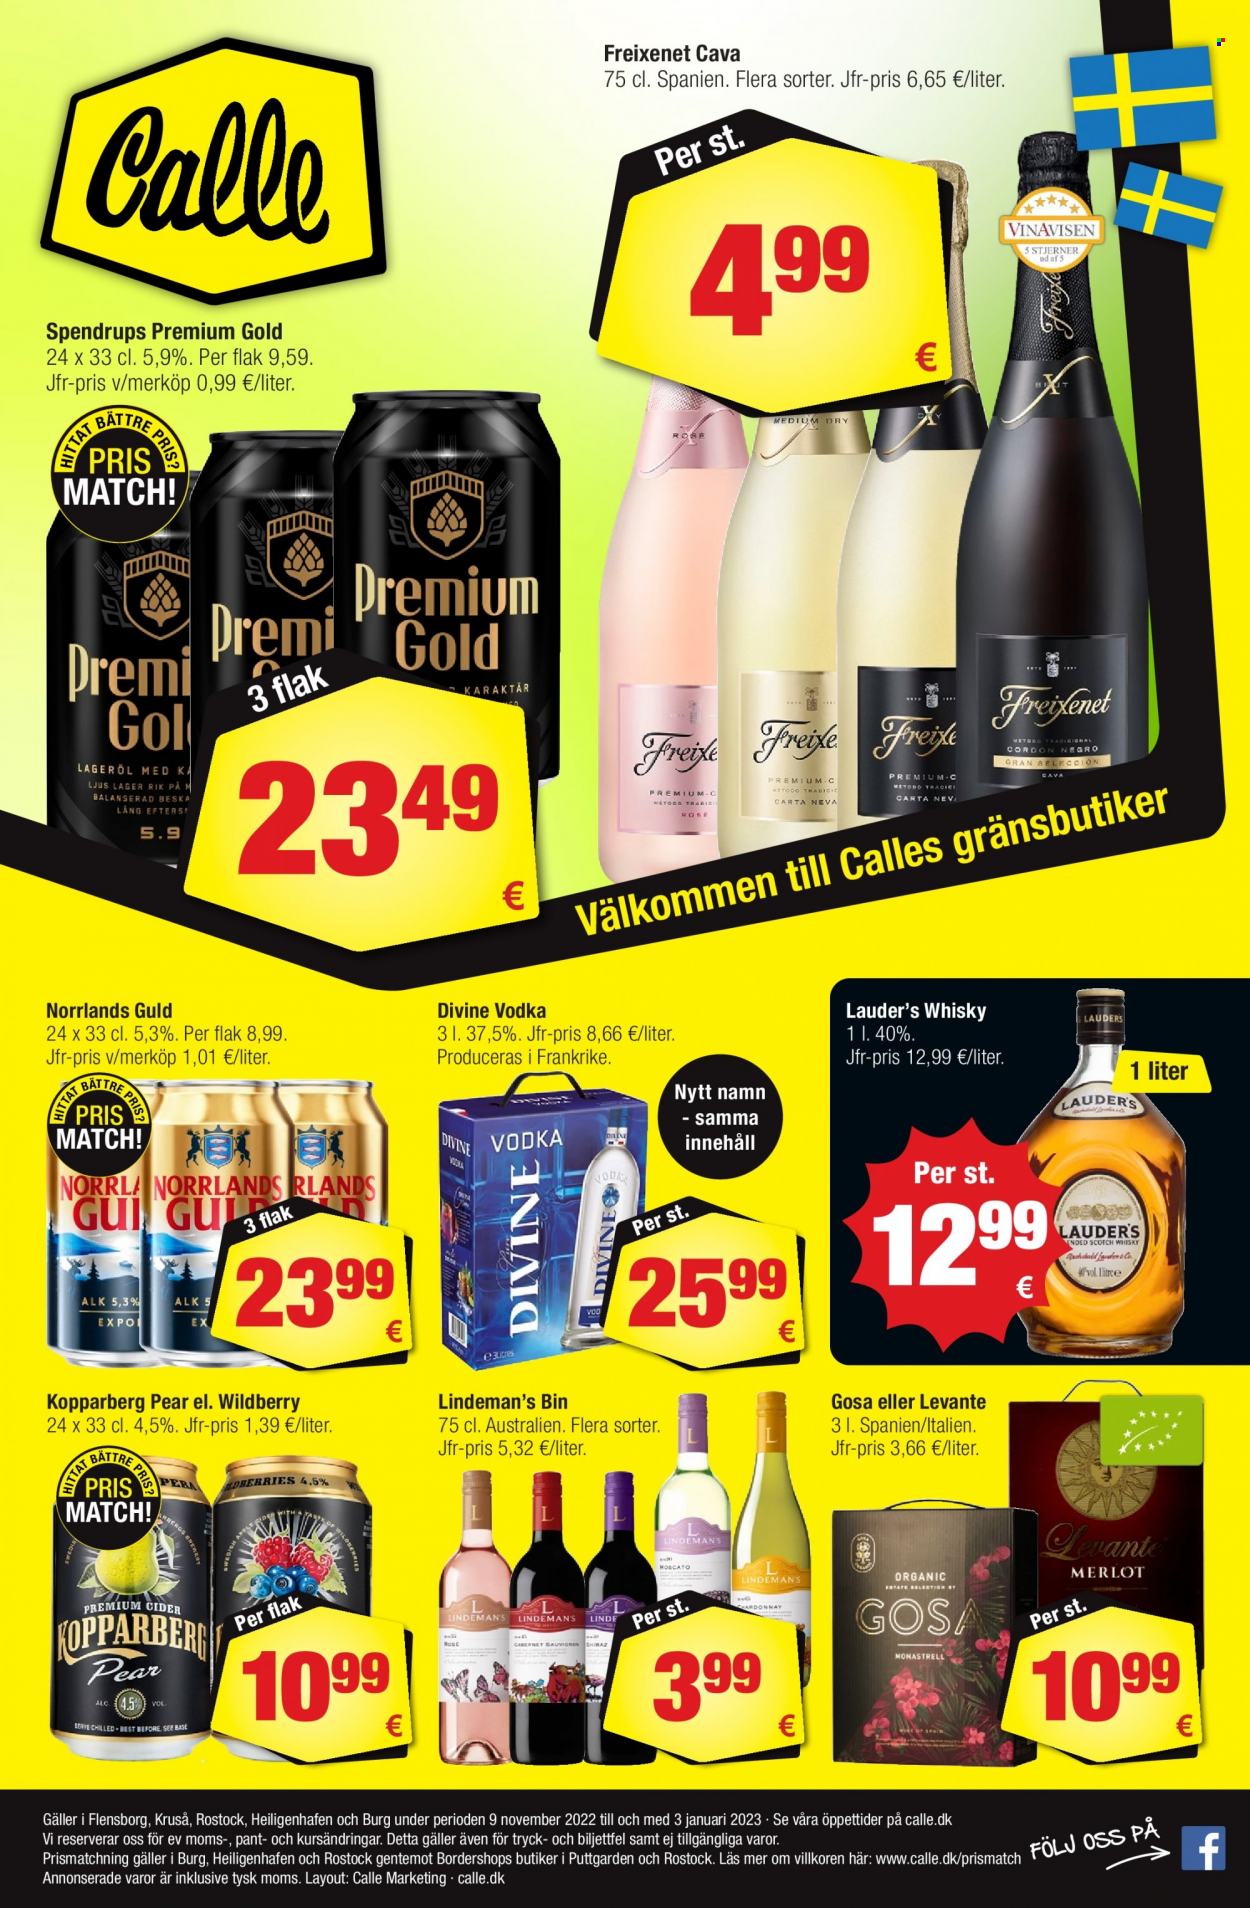 Calle reklamblad - 9/11 2022 - 3/1 2023 - varor från reklamblad - Kopparberg, Norrlands Guld, Cava, Freixenet, Lindeman's, whisky, Vodka. Sida 1.